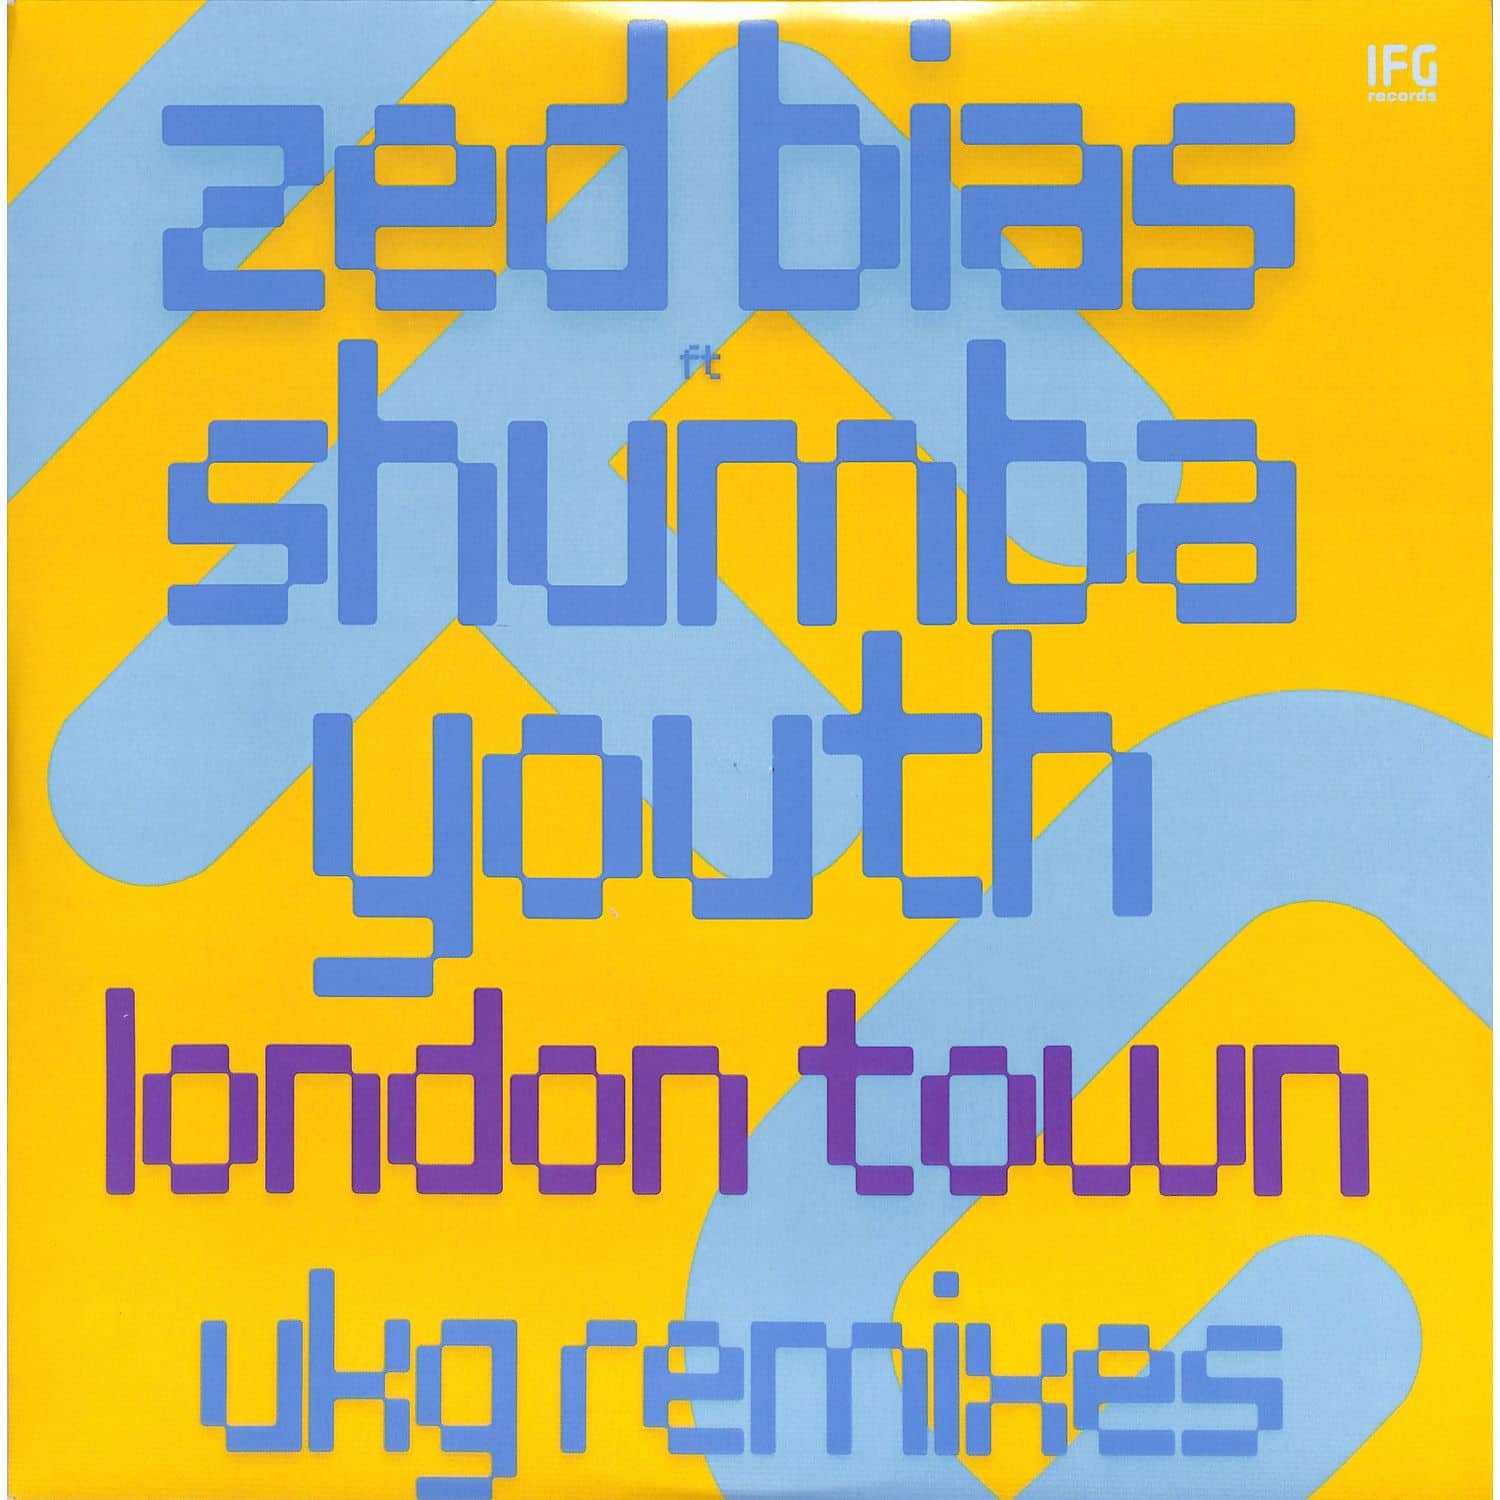 Zed Bias feat Shumba Youth - LONDON TOWN 